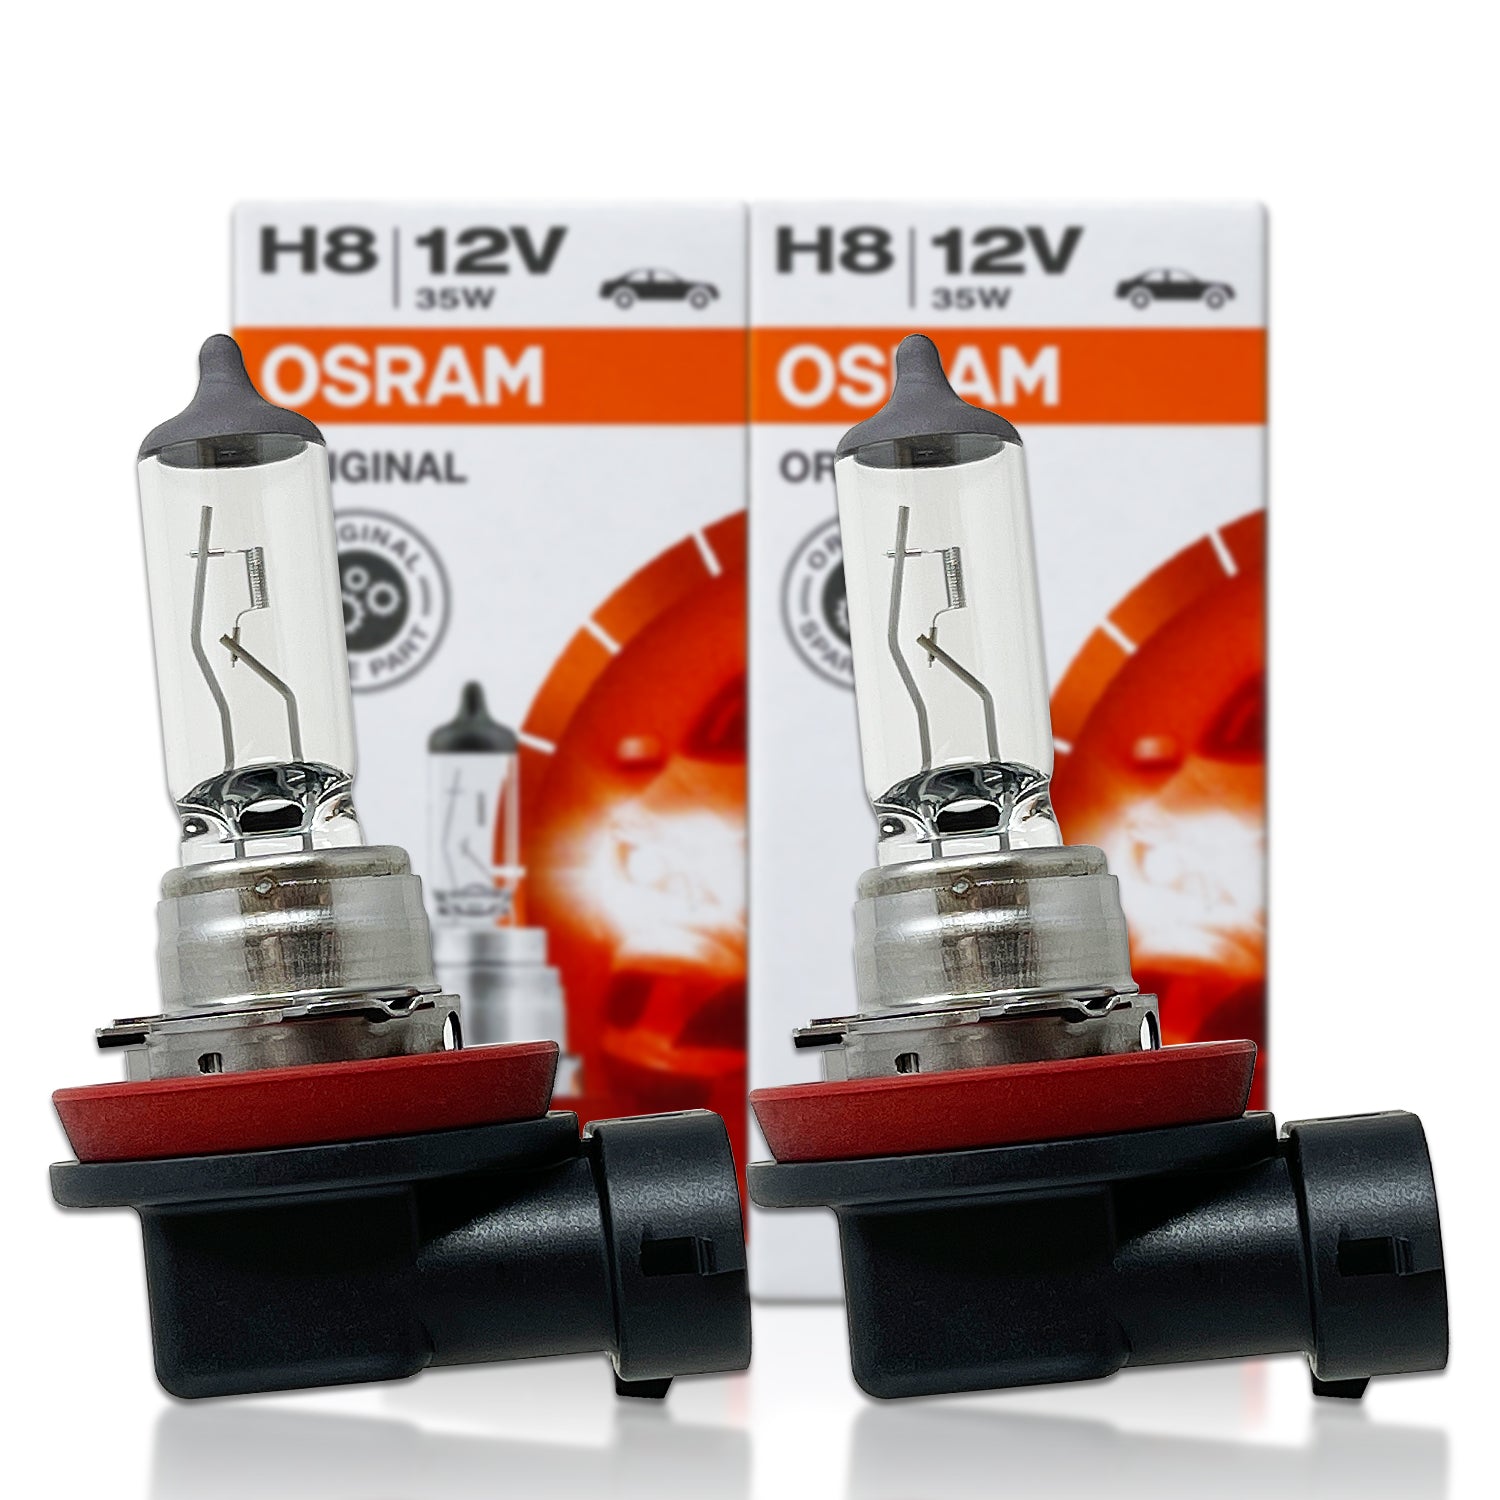 H8: Osram 64212NL Night Breaker Laser Halogen Bulbs – HID CONCEPT